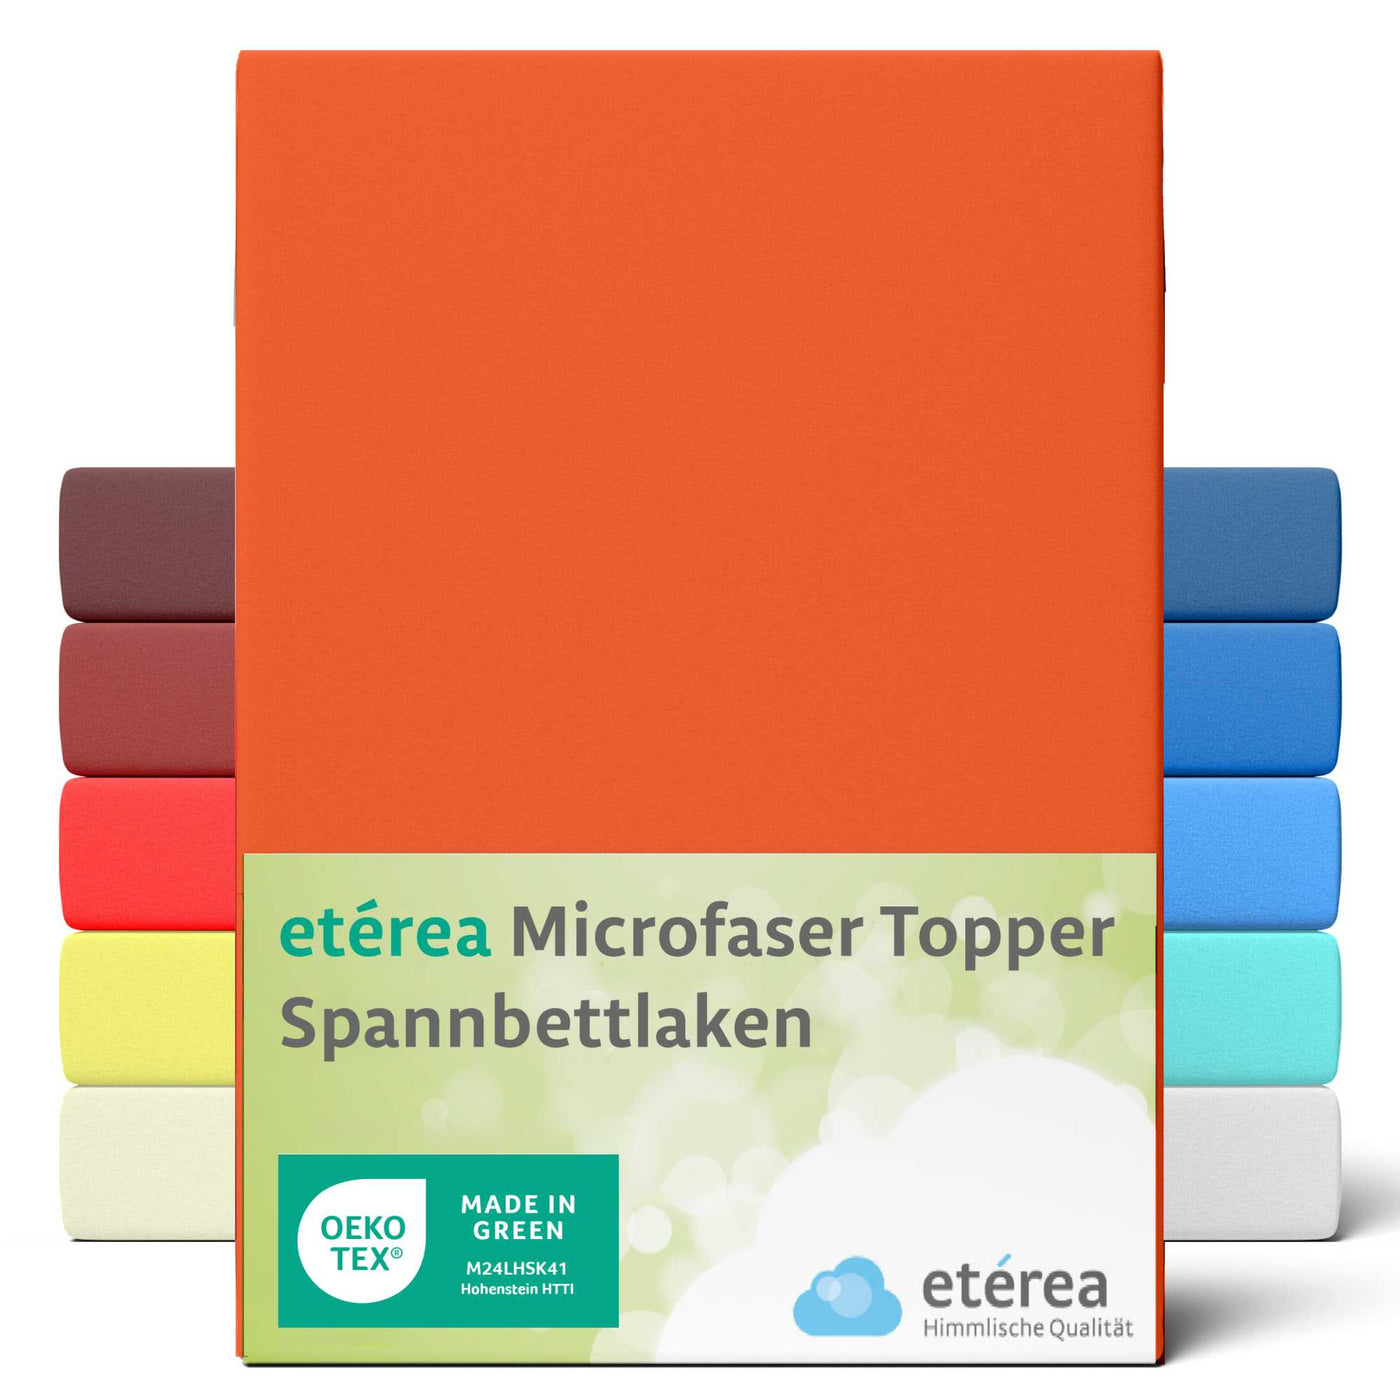 etérea Microfaser Topper Spannbettlaken #farbe_orange